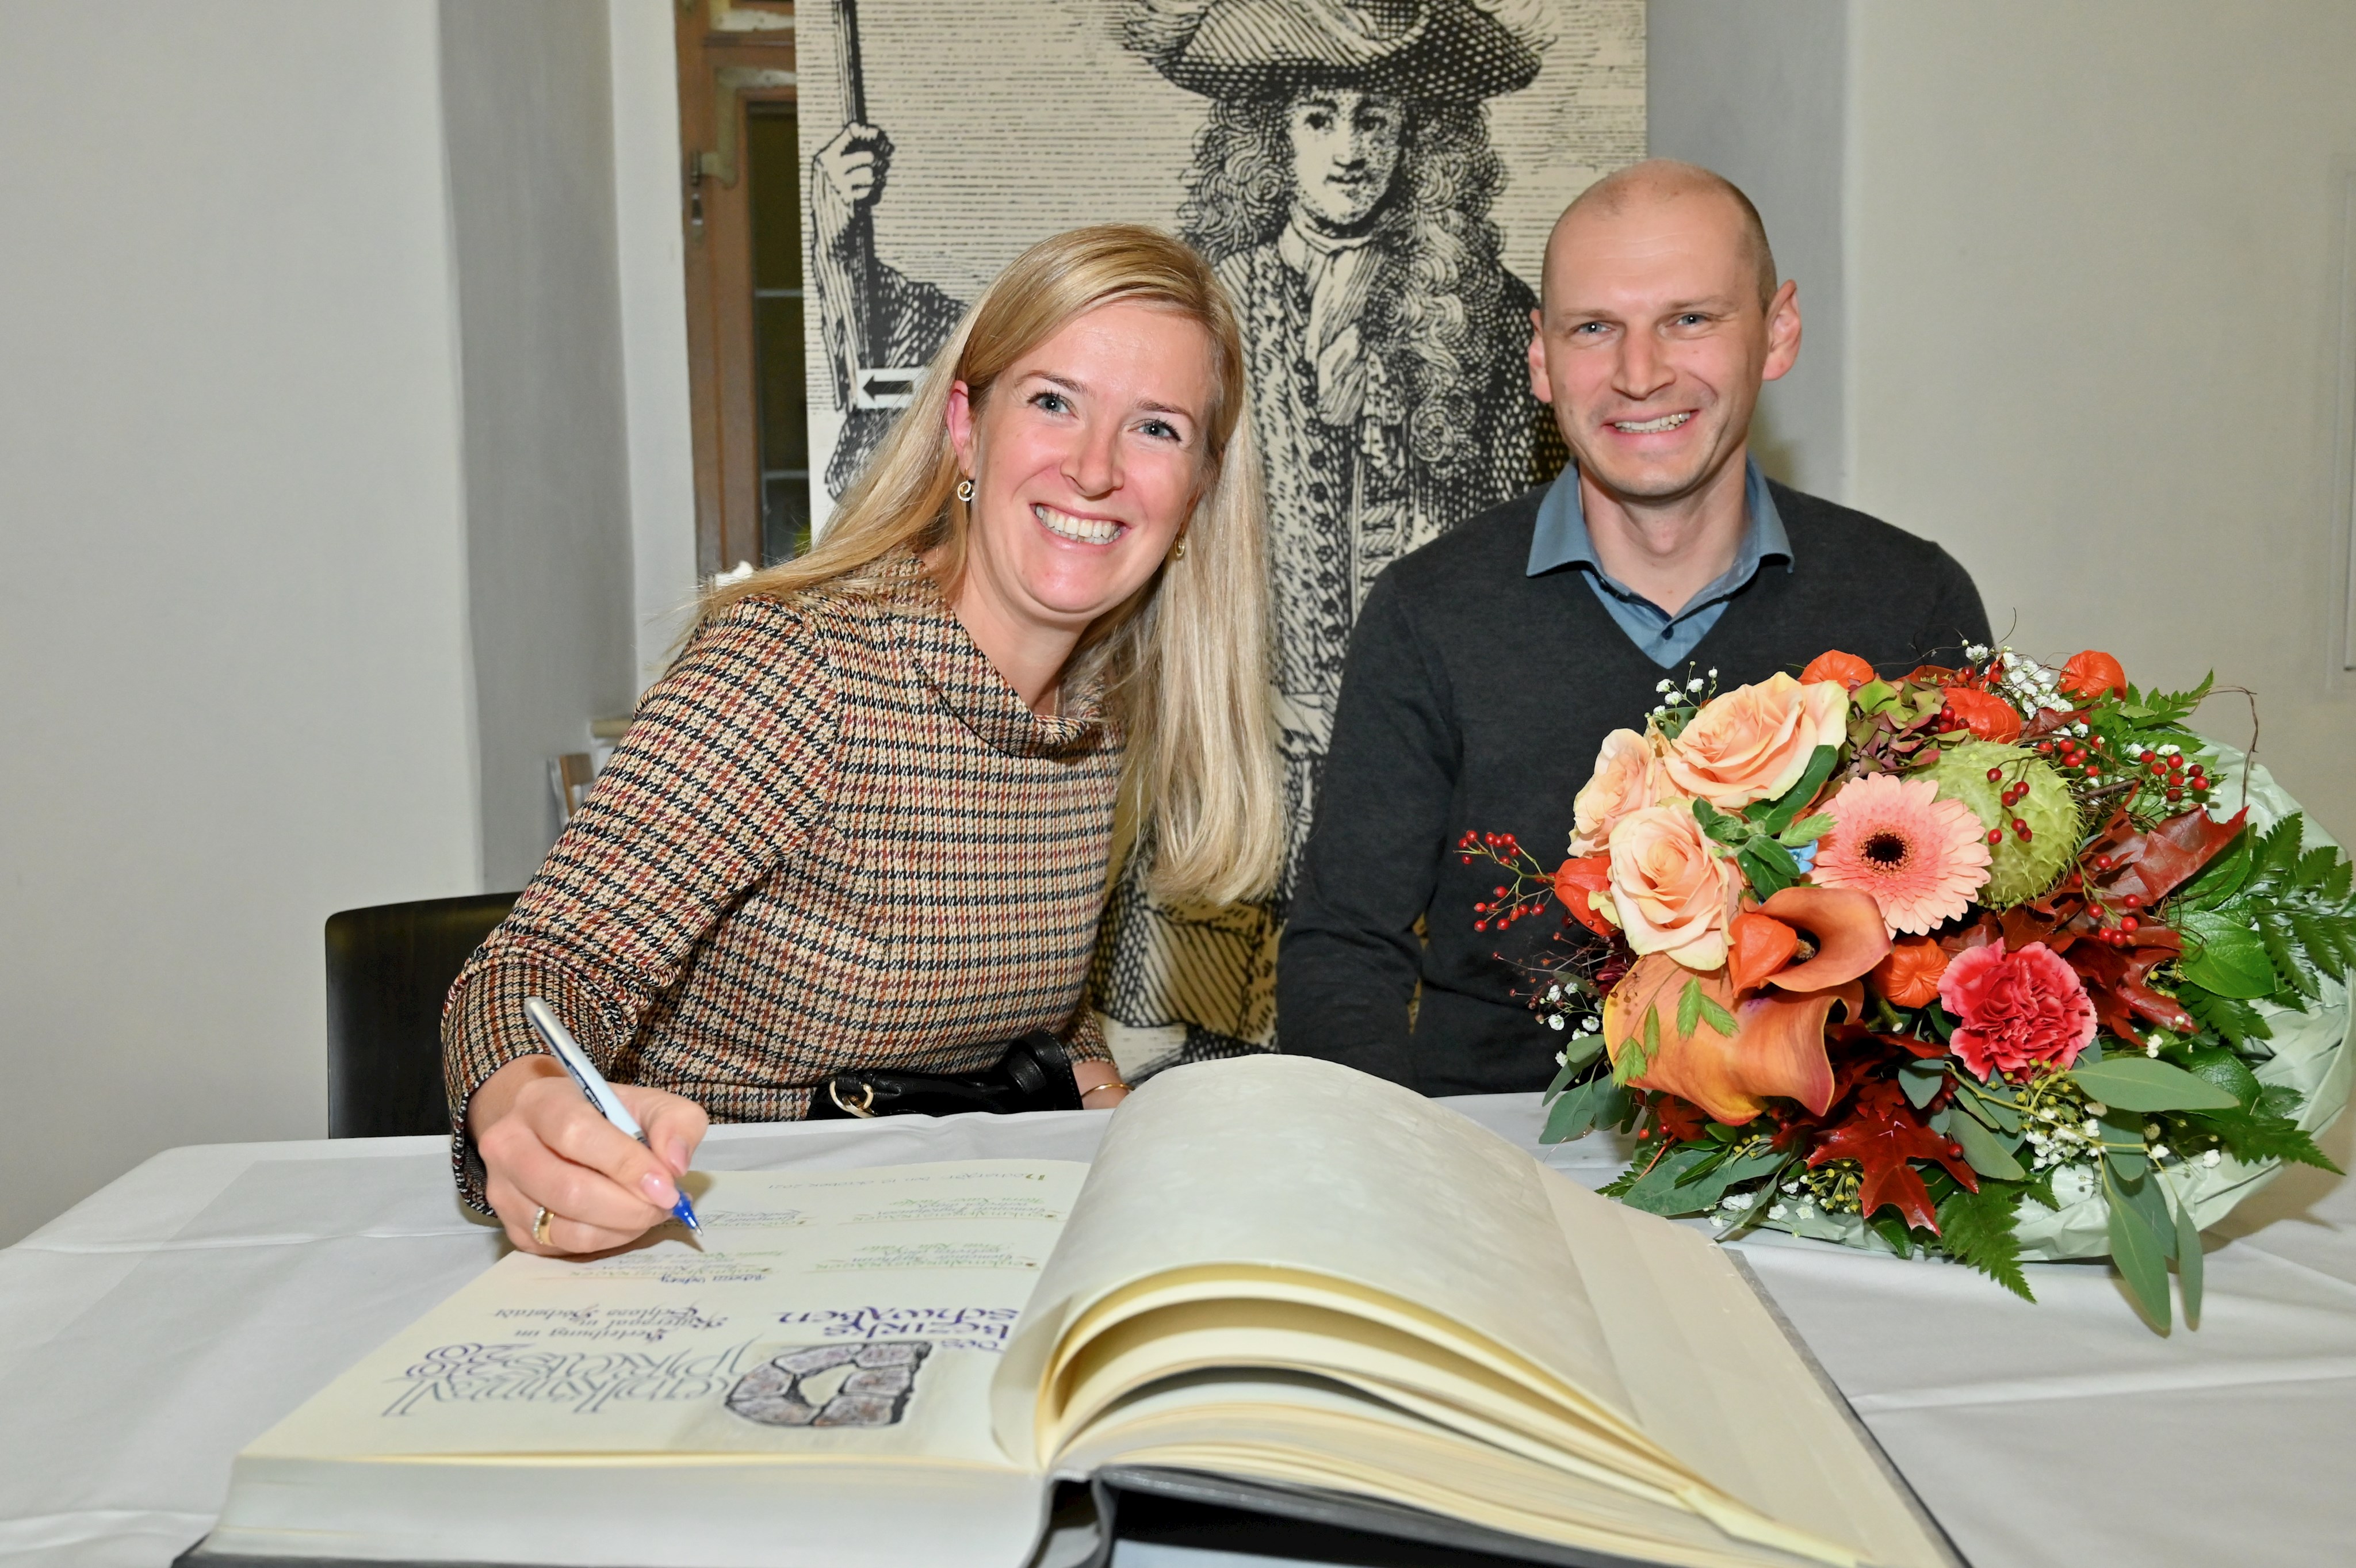 Preisverleihung Denkmalpreis 2020/2021: Familie Viehweg trägt sich in das Buch ein.